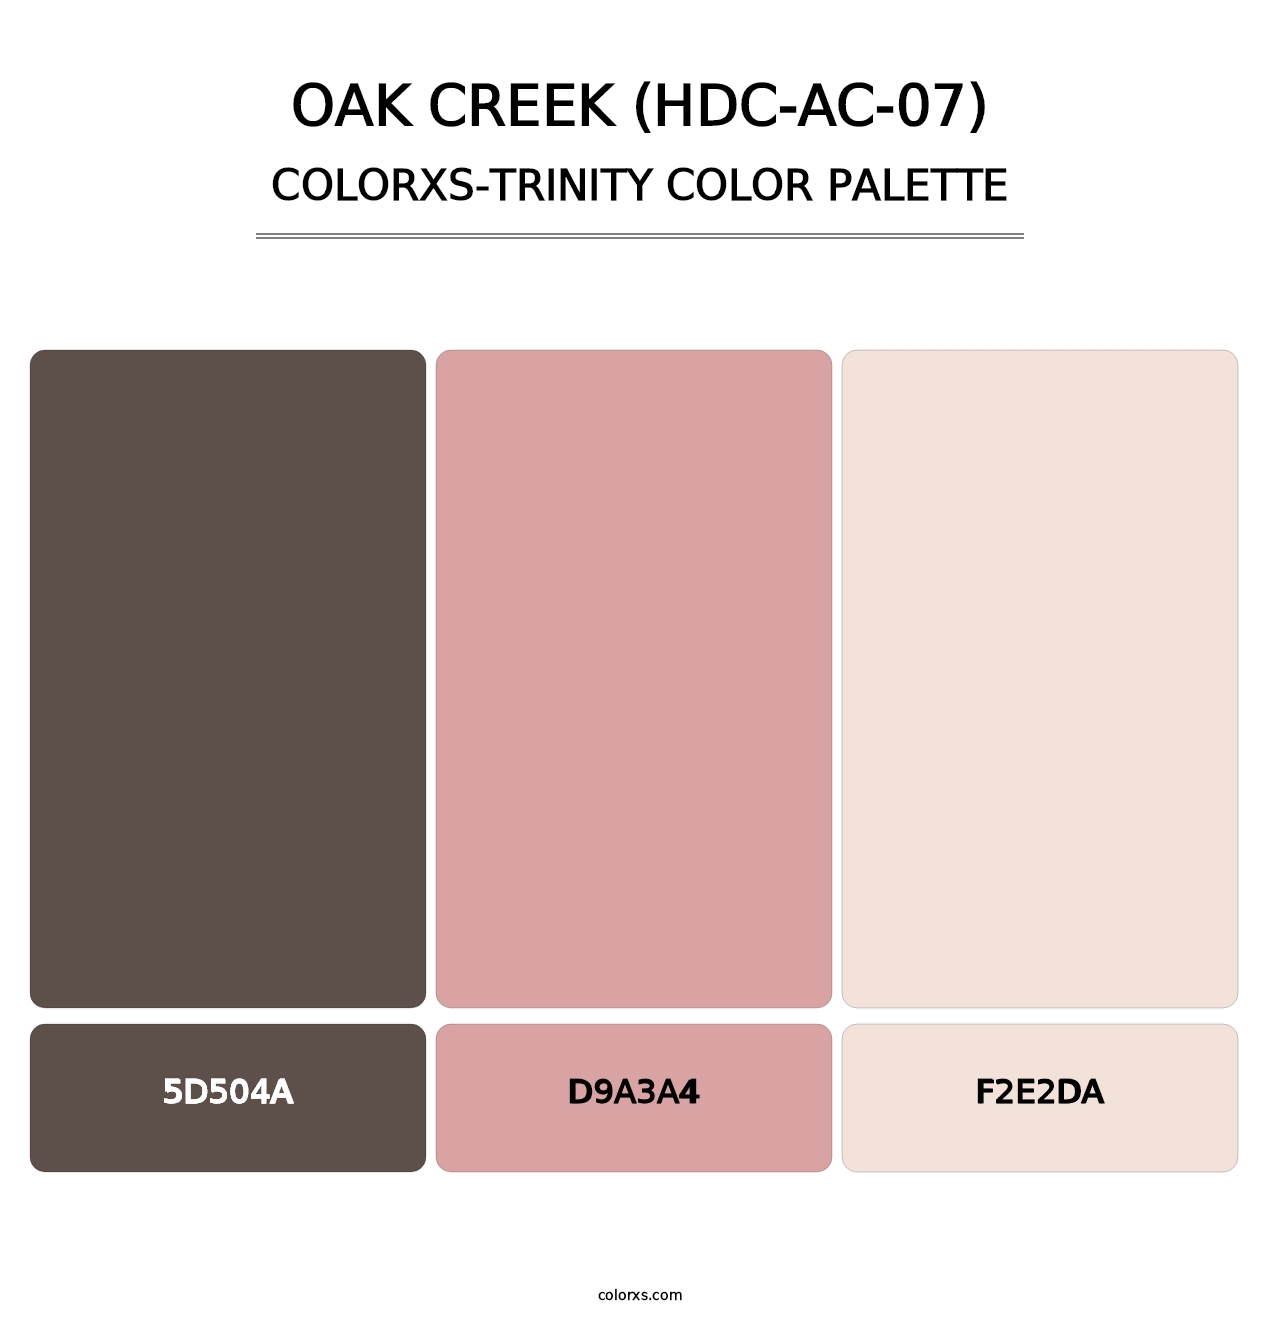 Oak Creek (HDC-AC-07) - Colorxs Trinity Palette